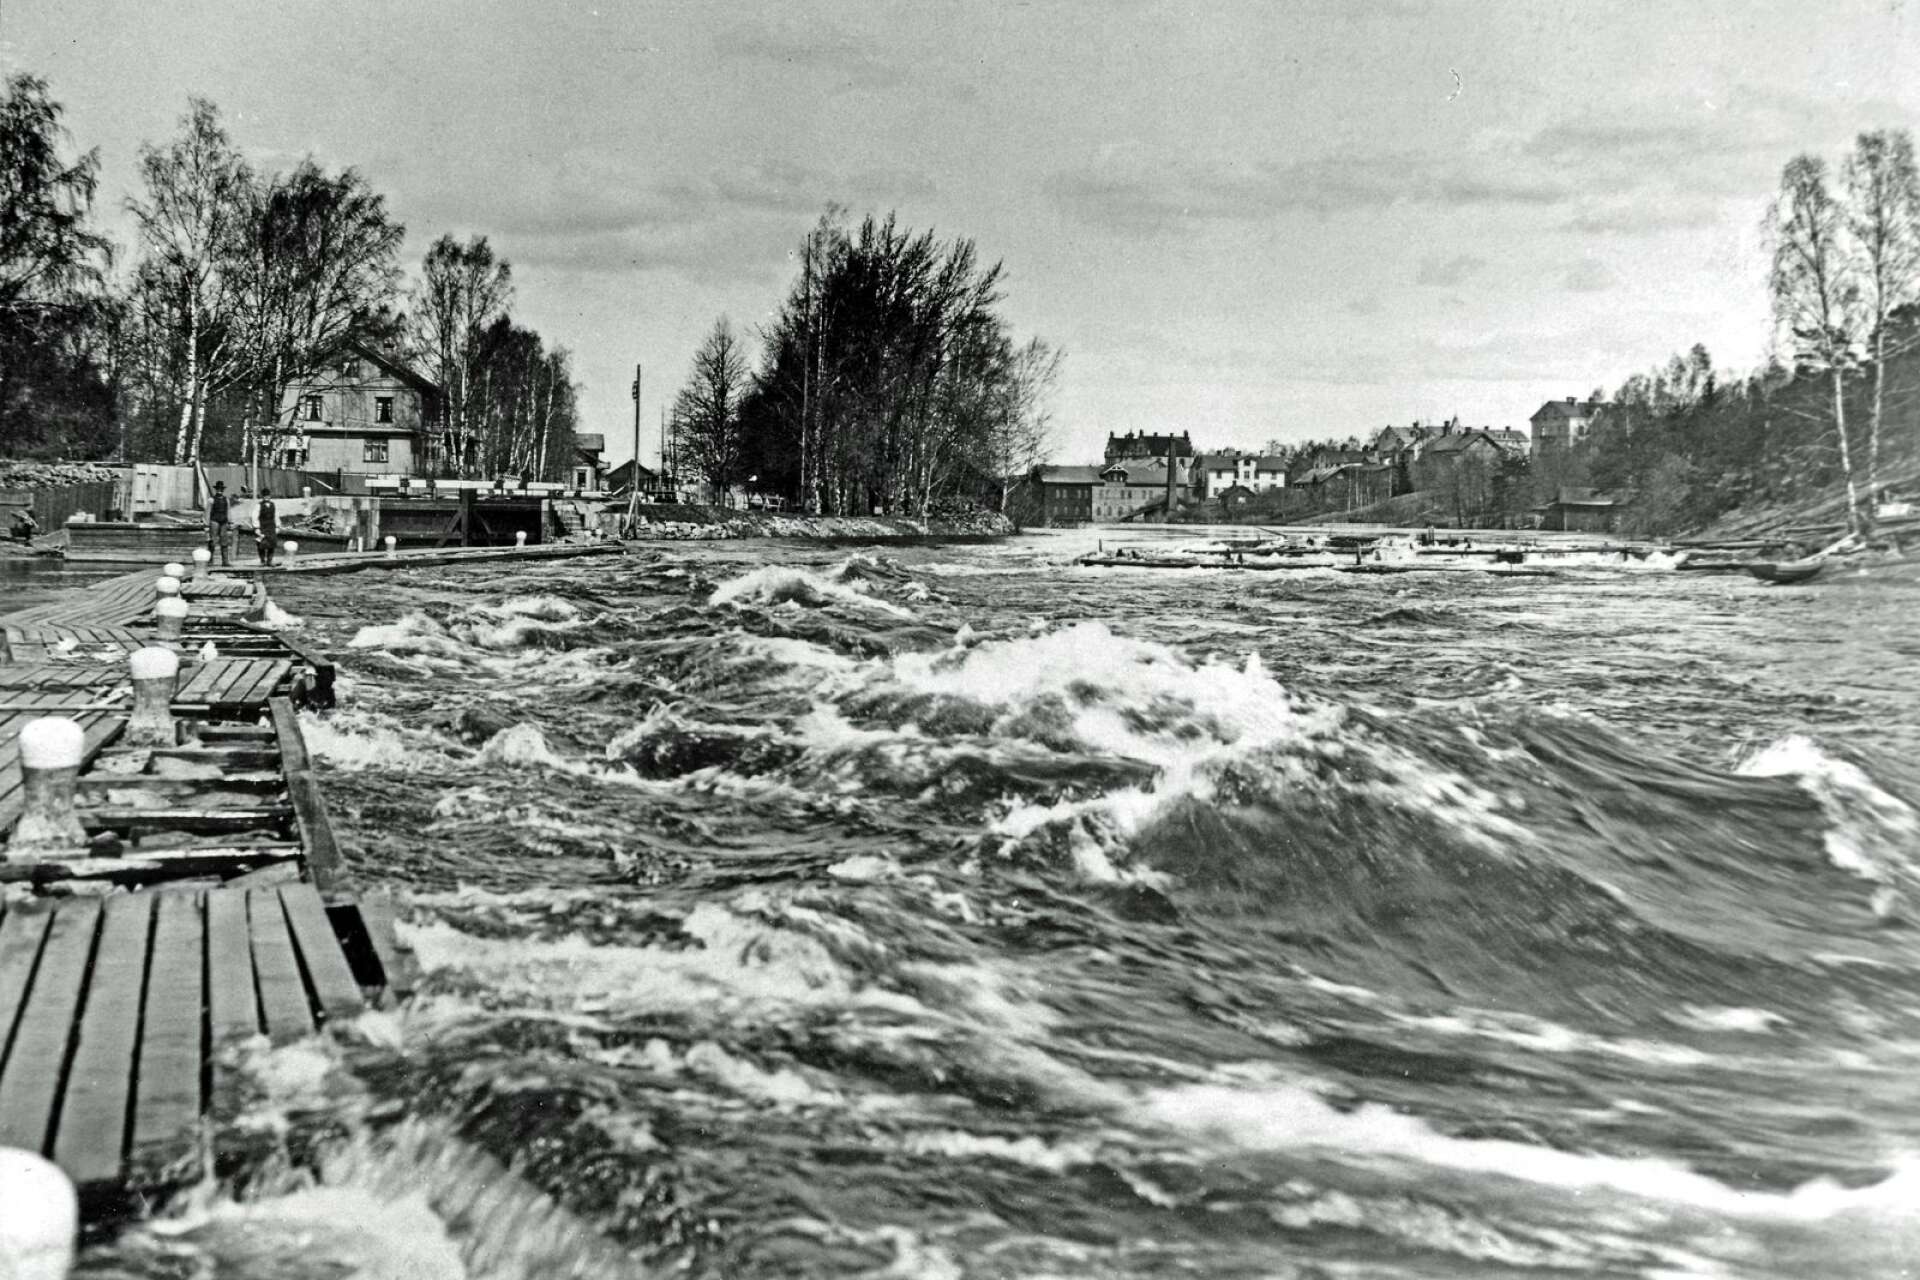 Byälvens vatten forsade delvis över den gamla ledarmen söder om slussen. Året var 1904. Det var översvämning. Då bar fotograf Ludvig Åberg sin stora lådkamera med stativ ytterst på ledarmen och tog denna bilden. Förmodligen var han rejält våt om benen efteråt.